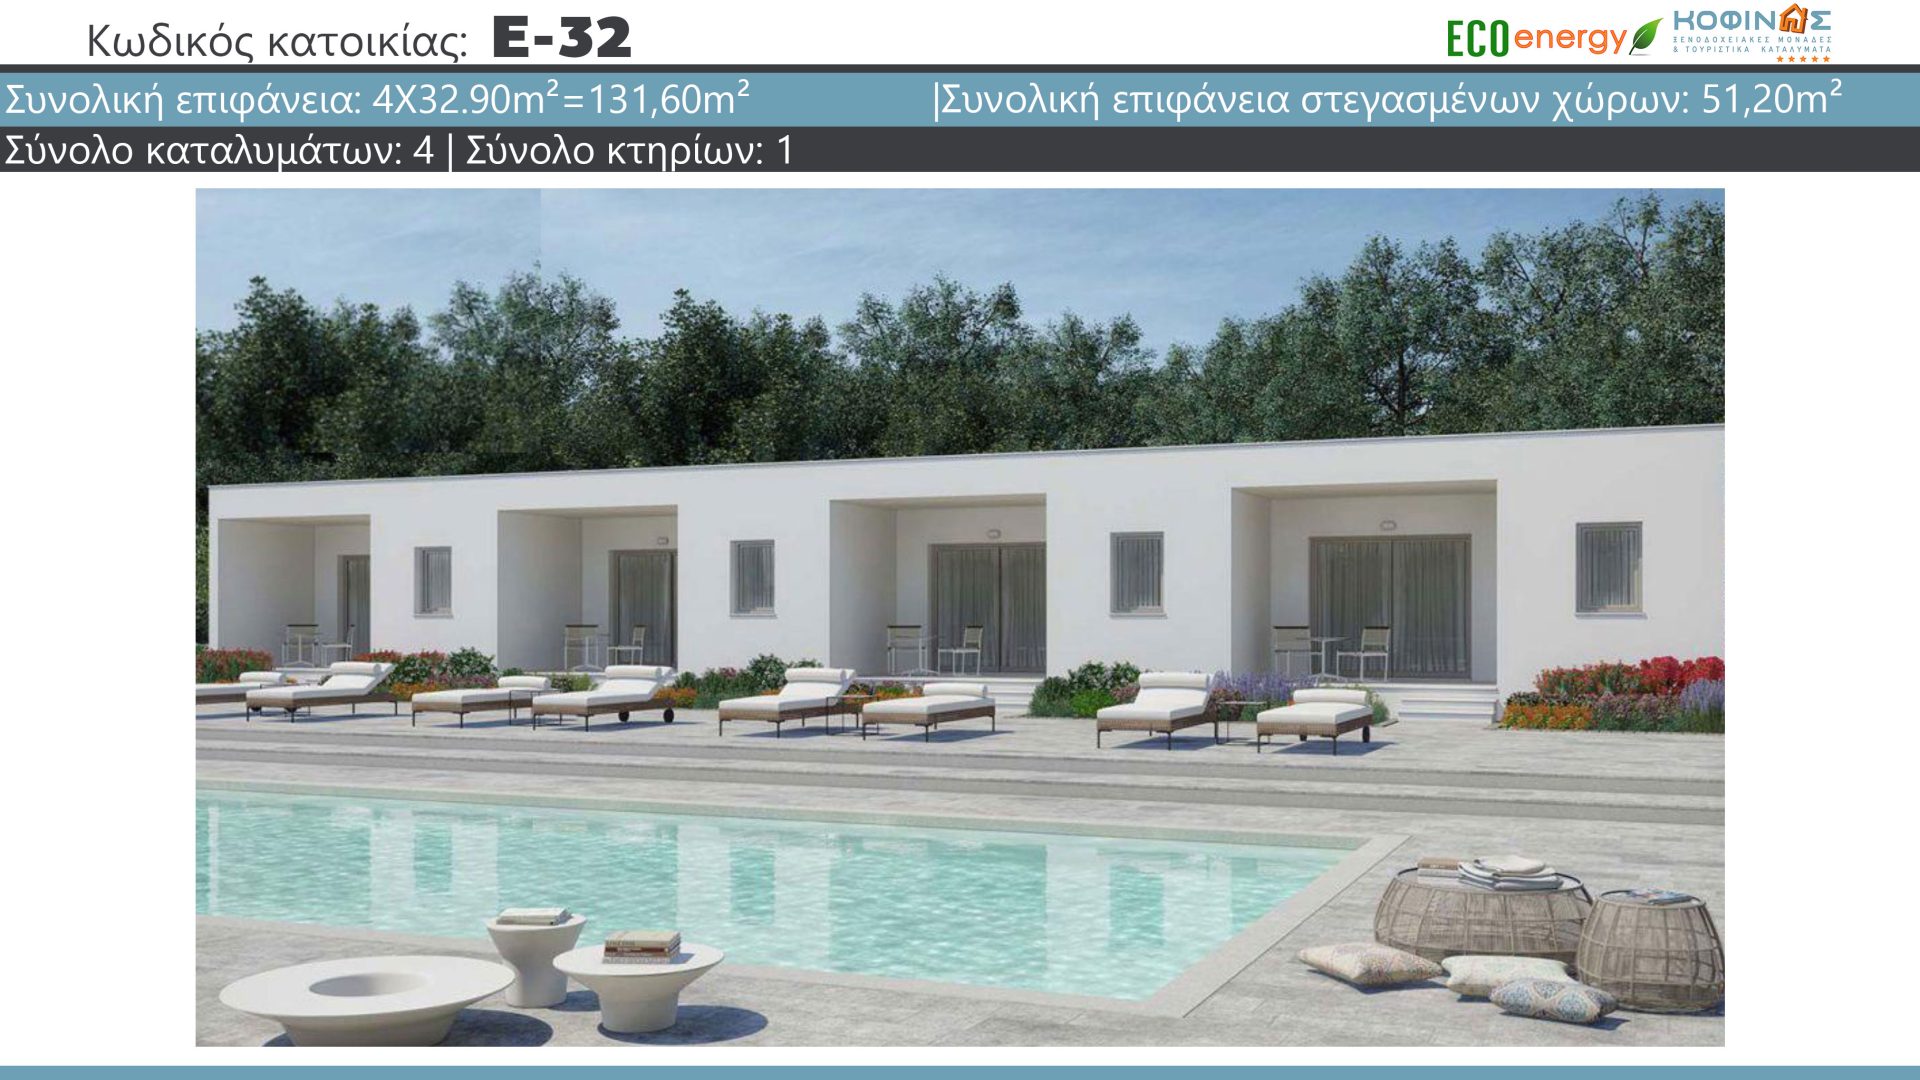 Συγκρότημα Κατοικιών E-32, συνολικής επιφάνειας 4 x 32,90 = 131,60 τ.μ. , συνολική επιφάνεια στεγασμένων χώρων 51.20 m²